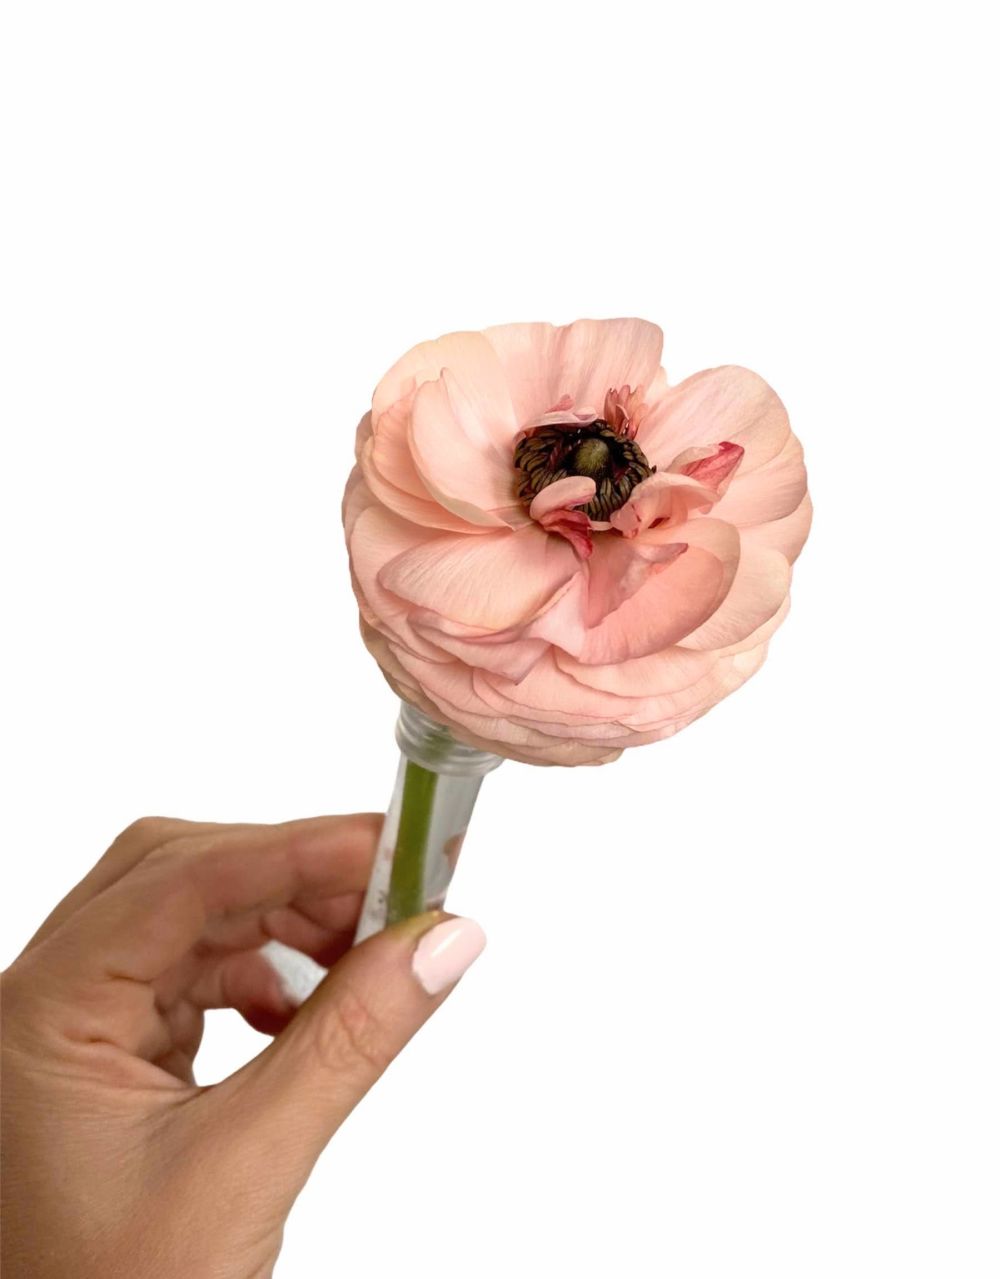 Single bloom in water tube